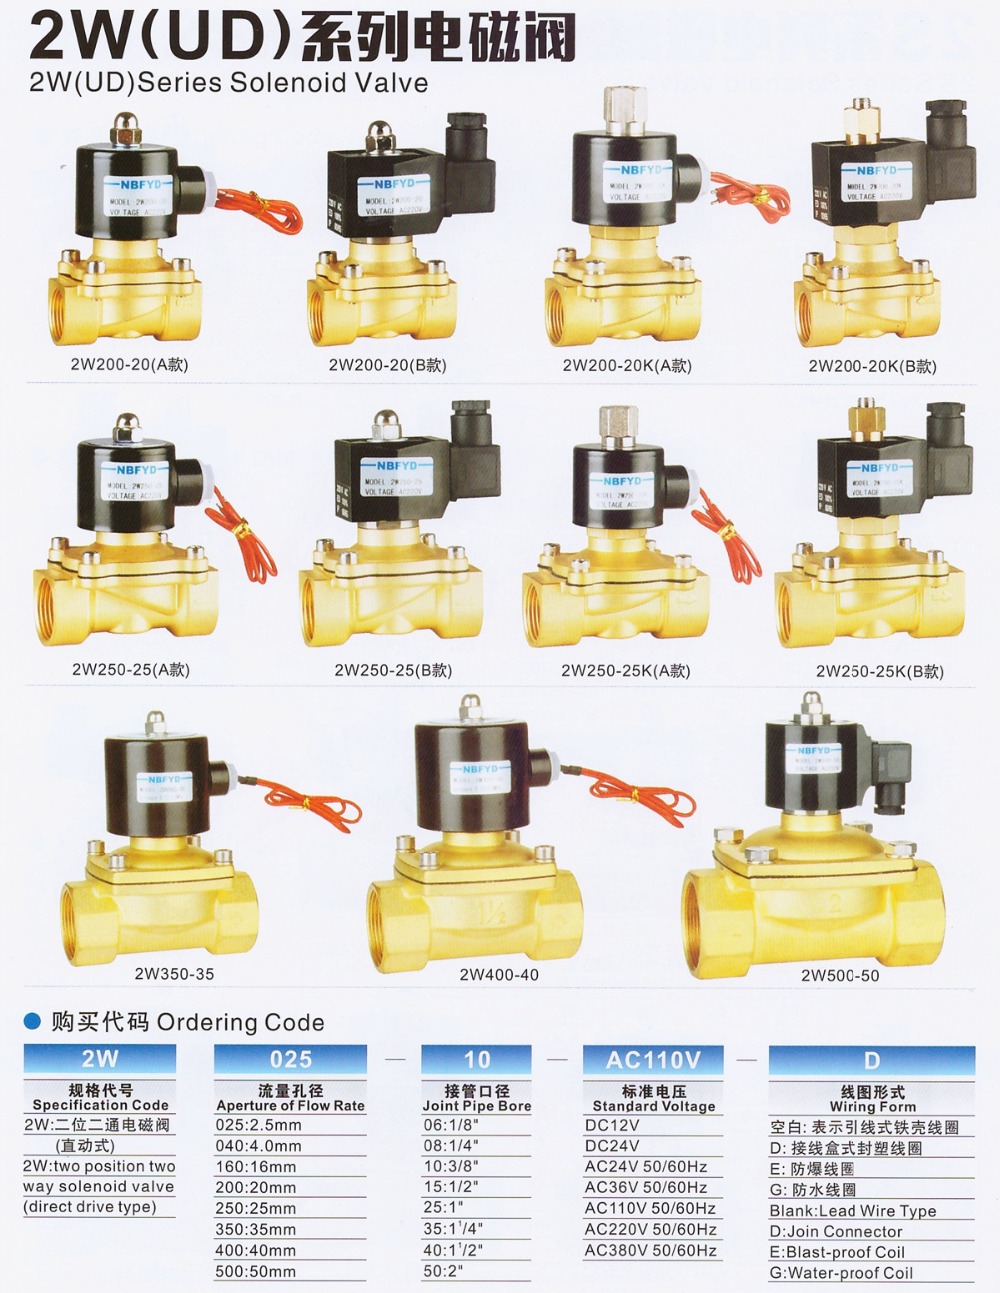 2 way brass water stop solenoid valve PU220-08